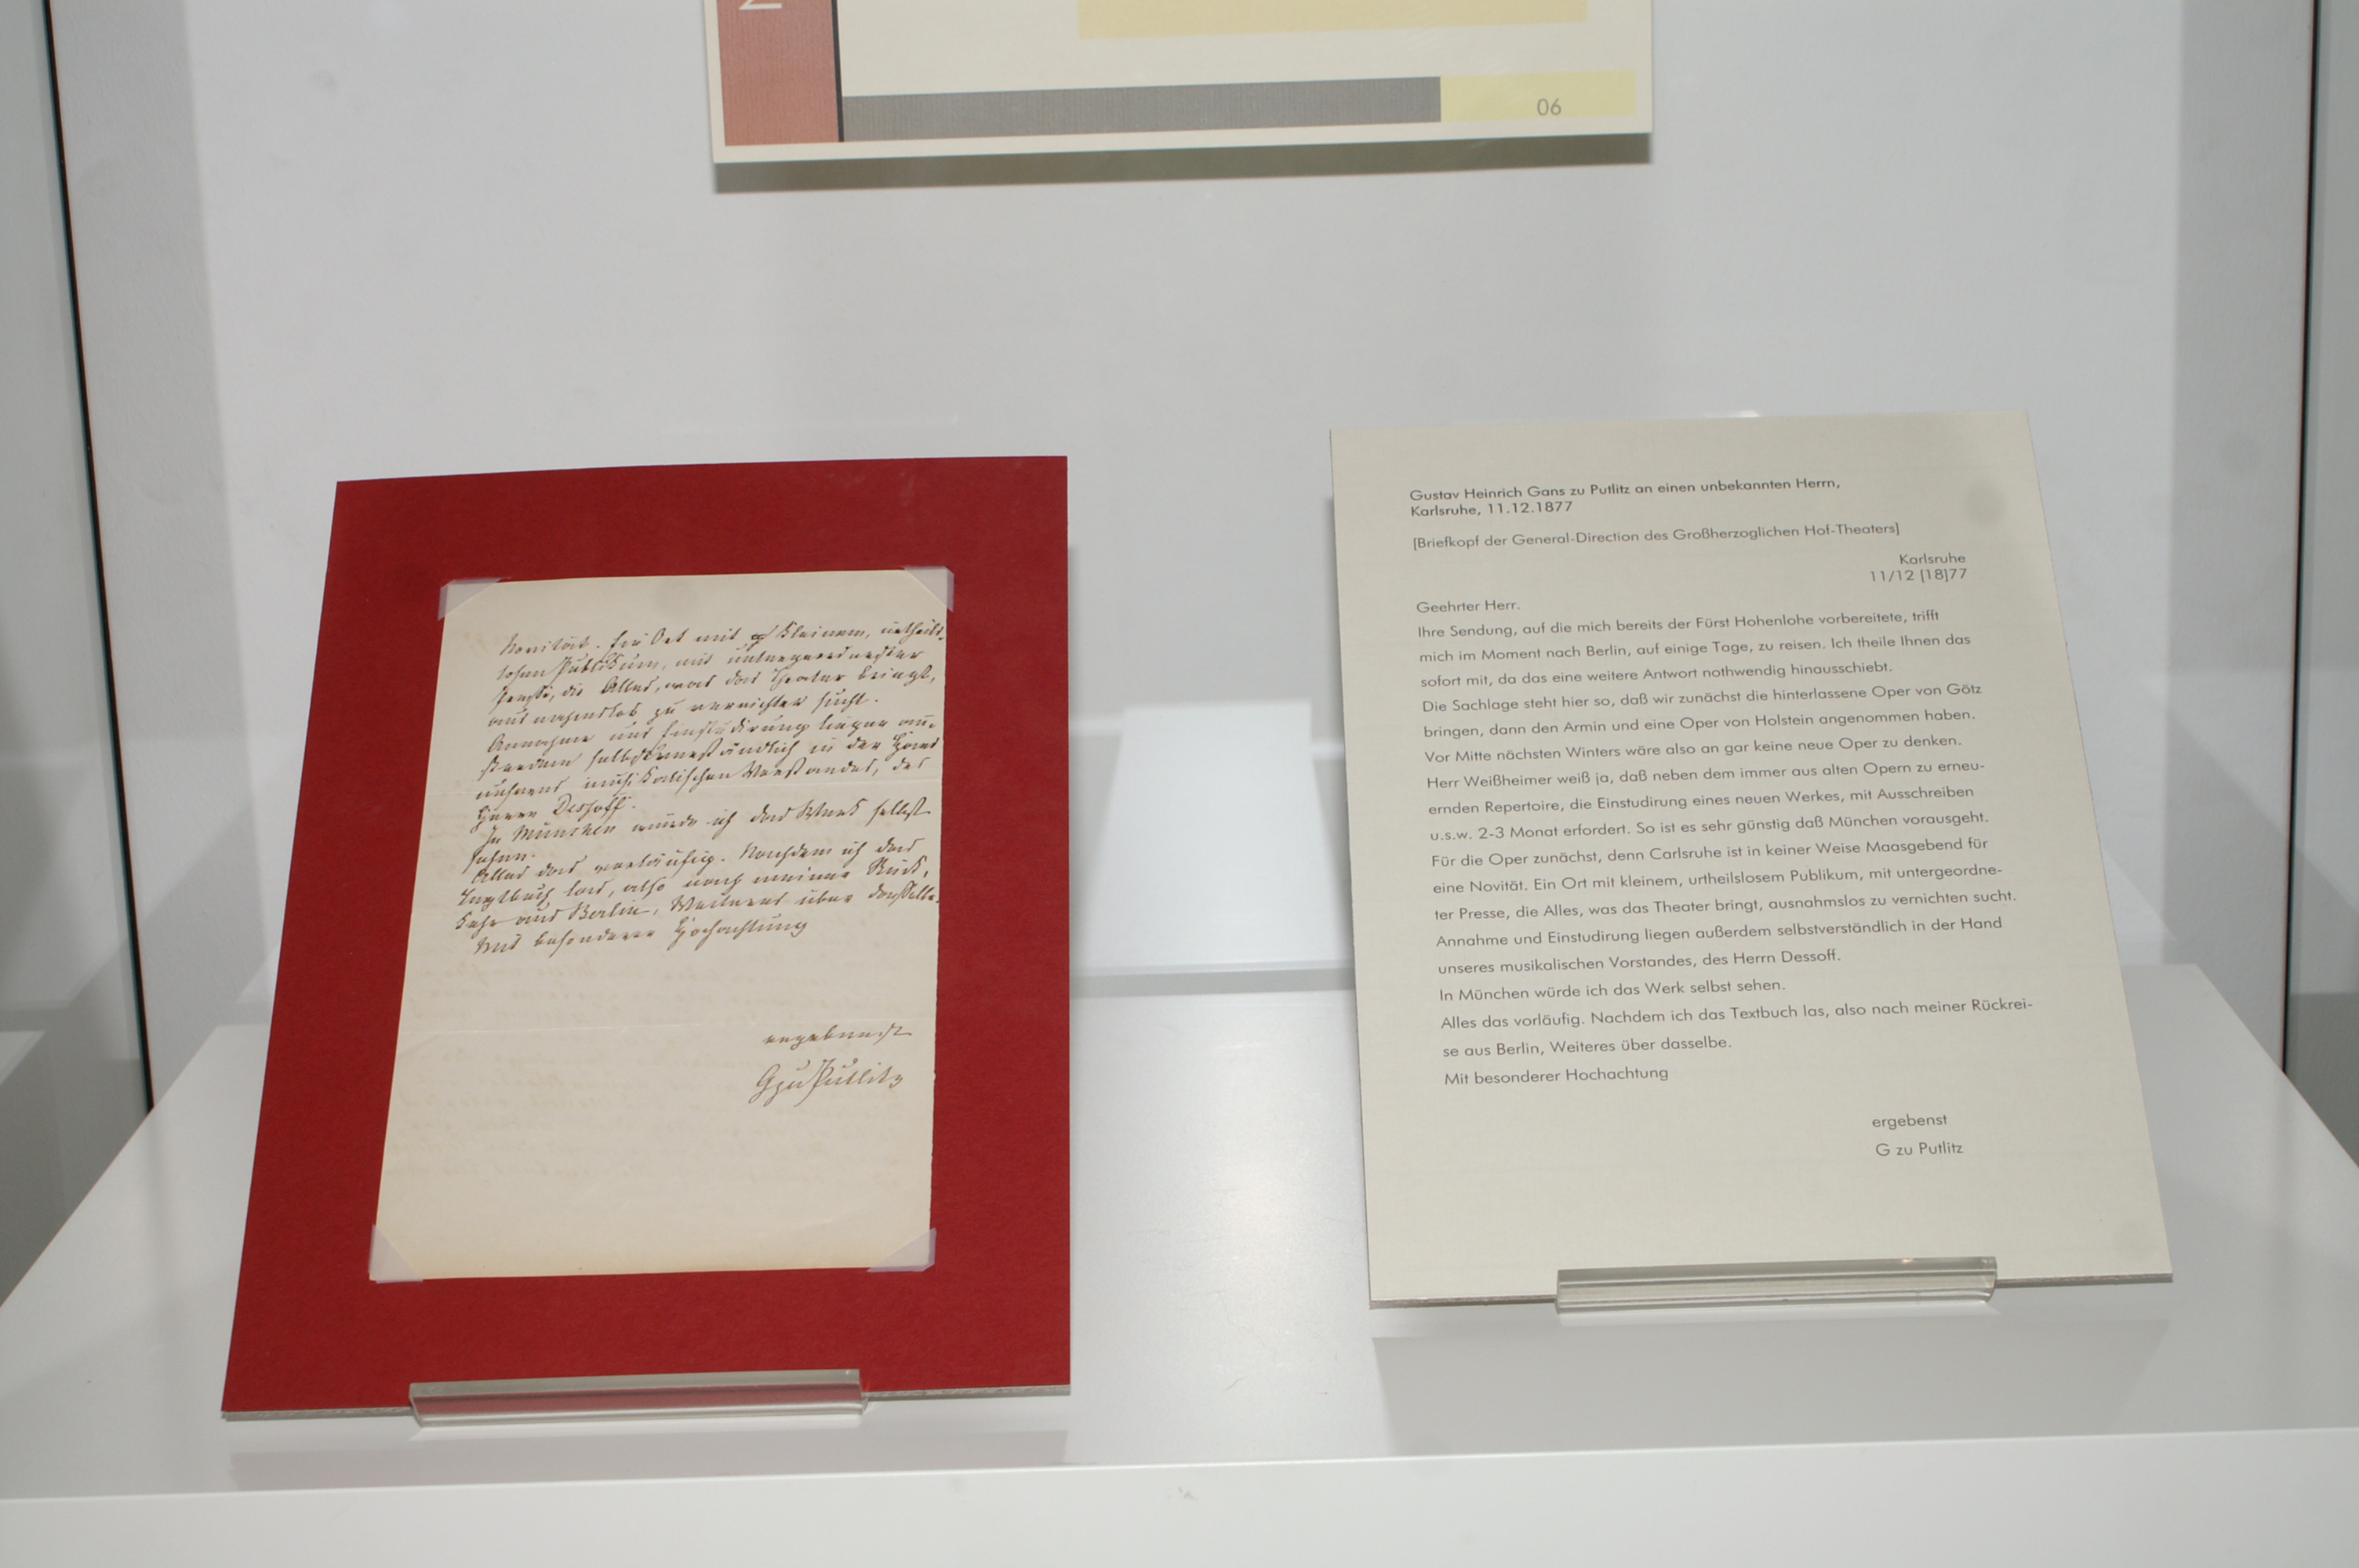 Ausgestellt ist der Brief von Gustav Heinrich Ganz zu Putlitz an einen unbekannten Herrn, daneben ein Transkript des Briefs.